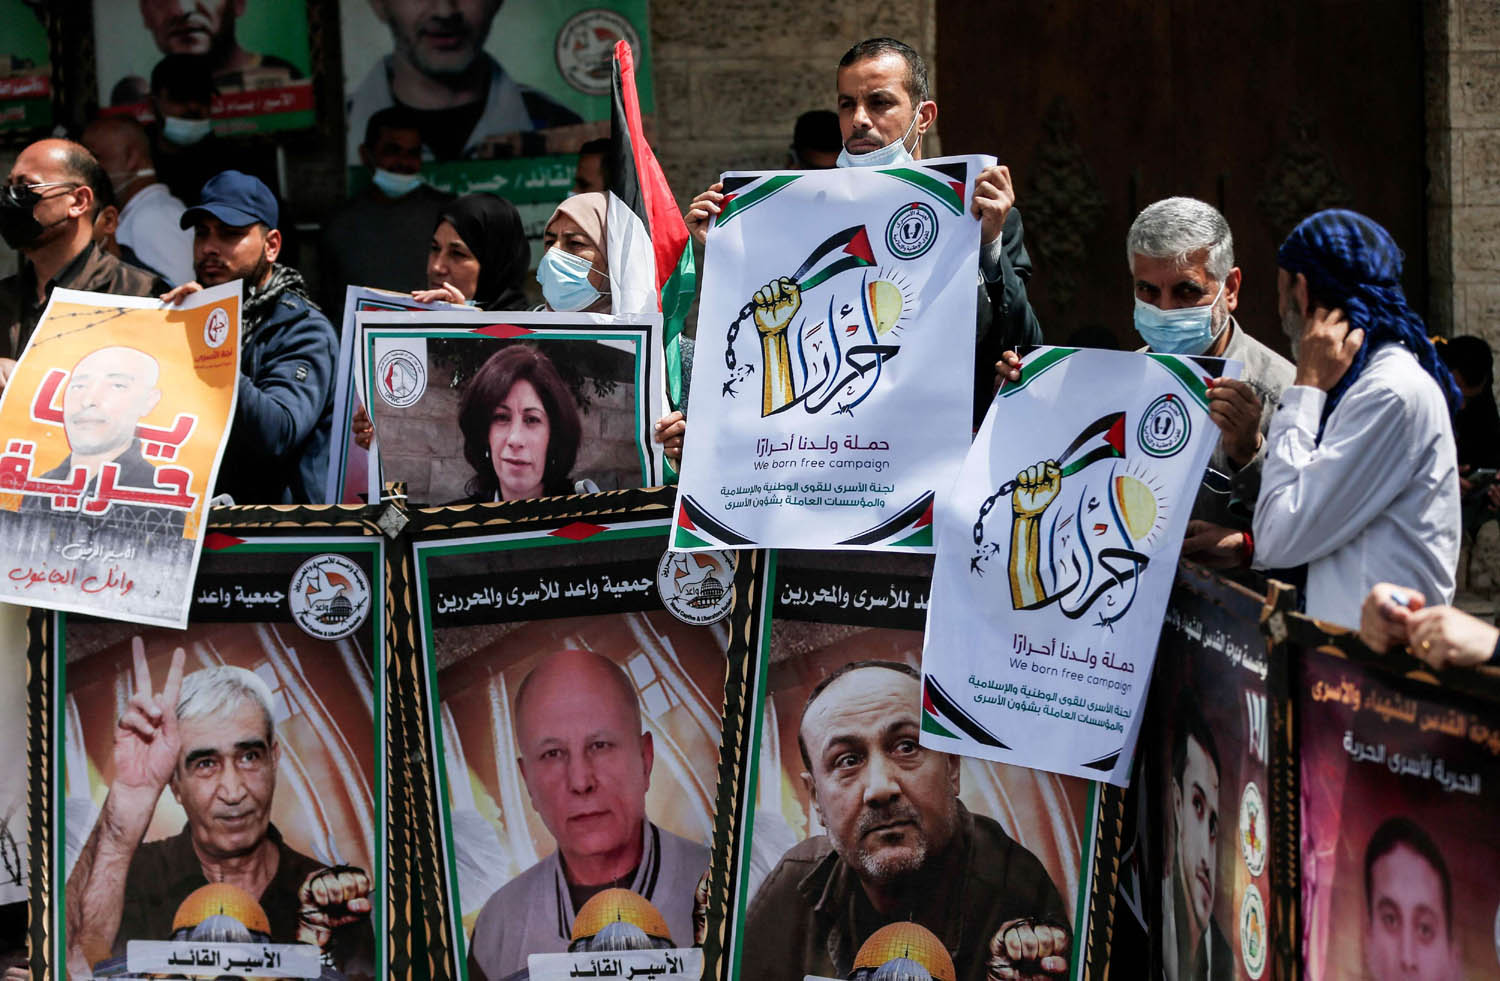 فلسطينيون يرفعون صورا لأسرى من زعماء الحركات الفلسطينية